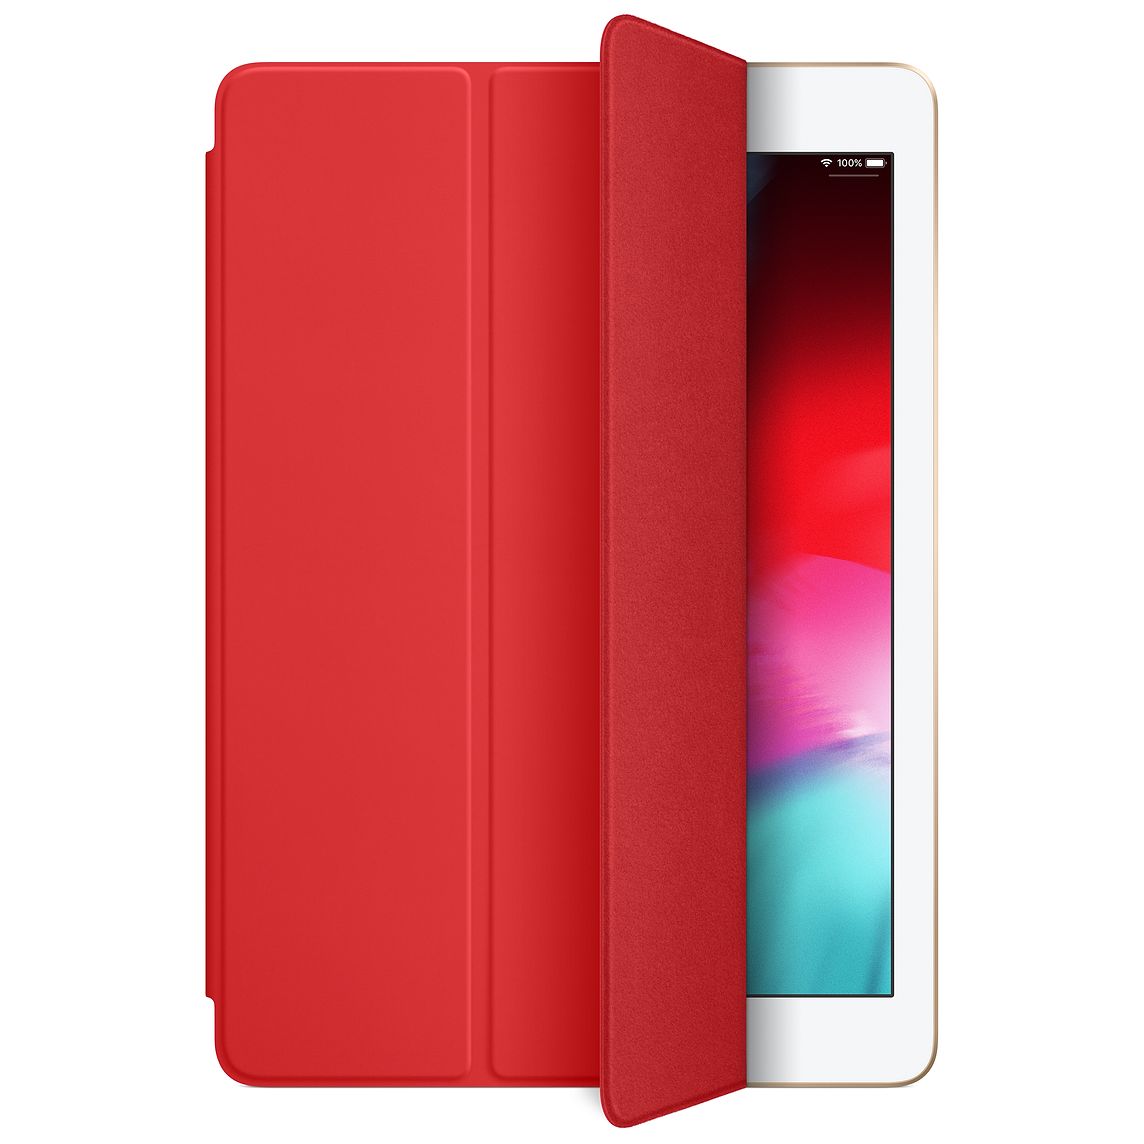 Смарт-кейс iPad Air красный